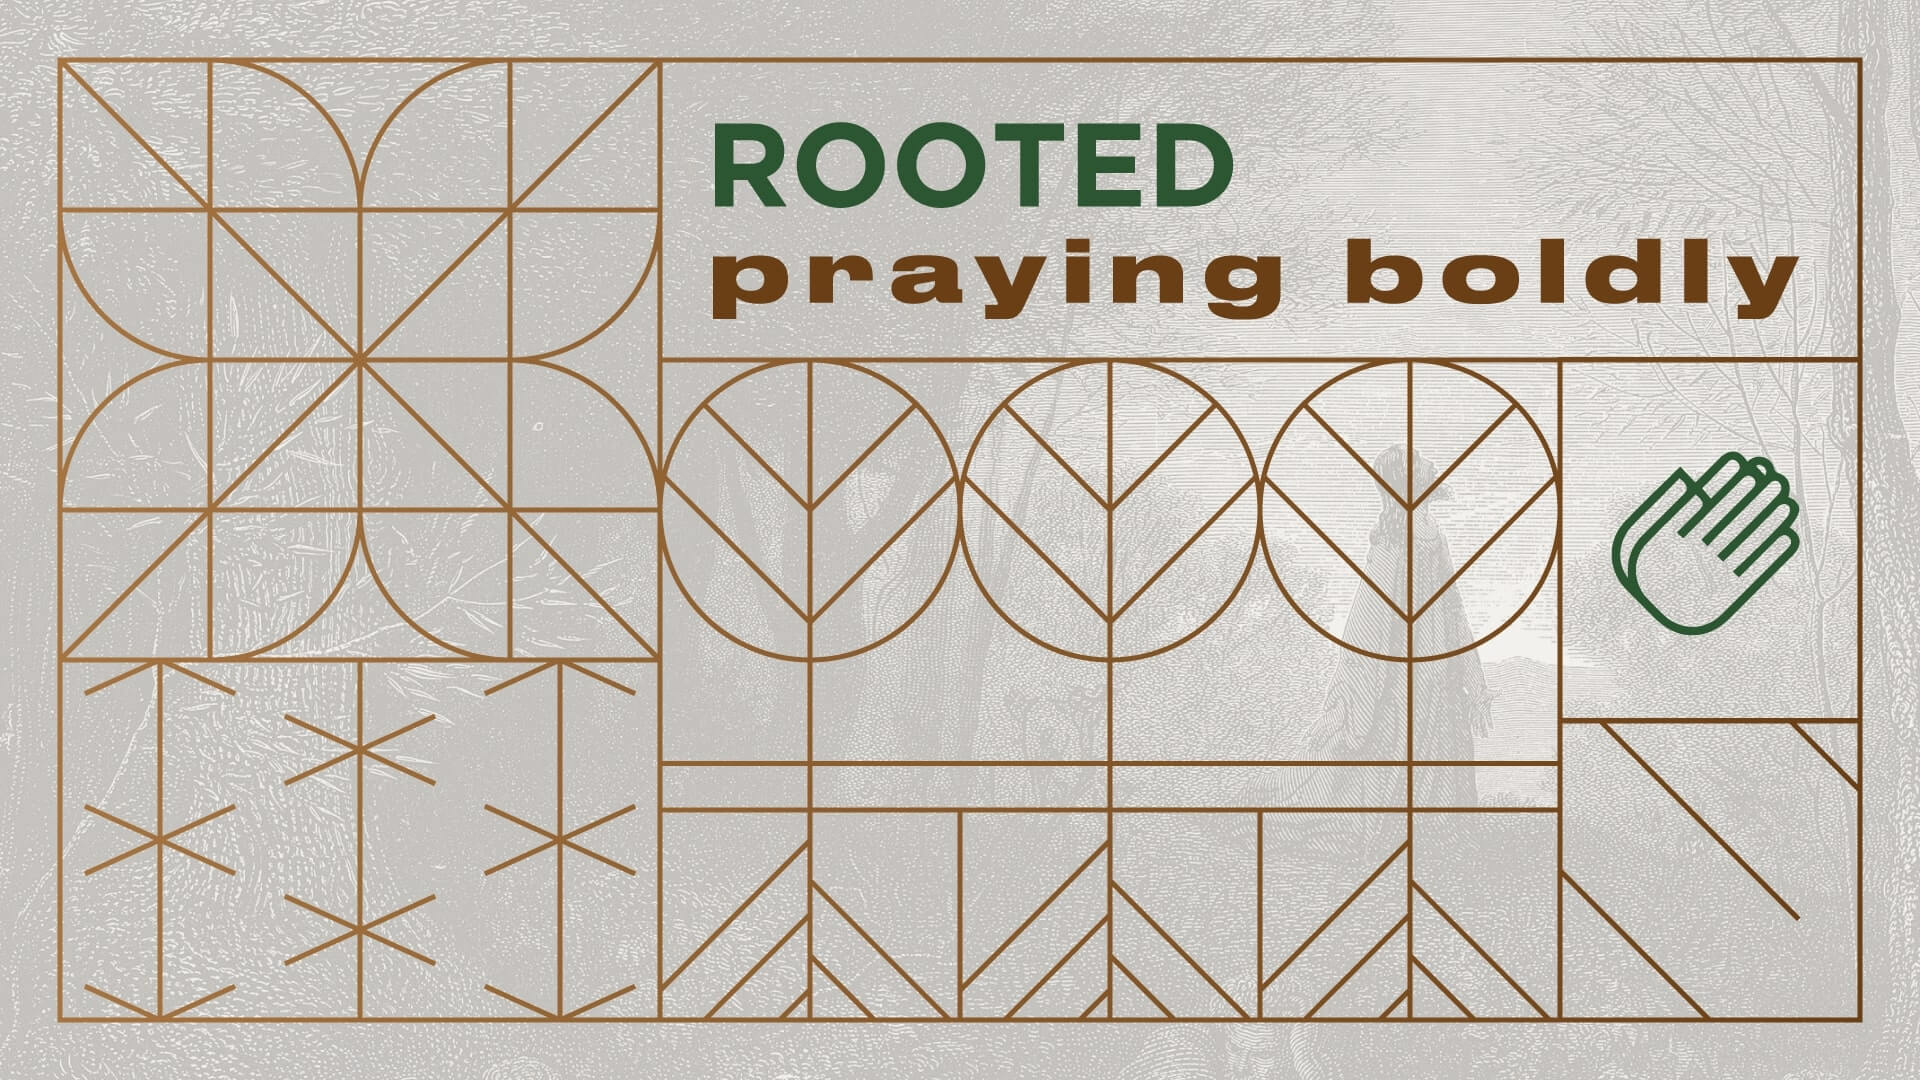 8:00 – Rooted – Praying Bolding